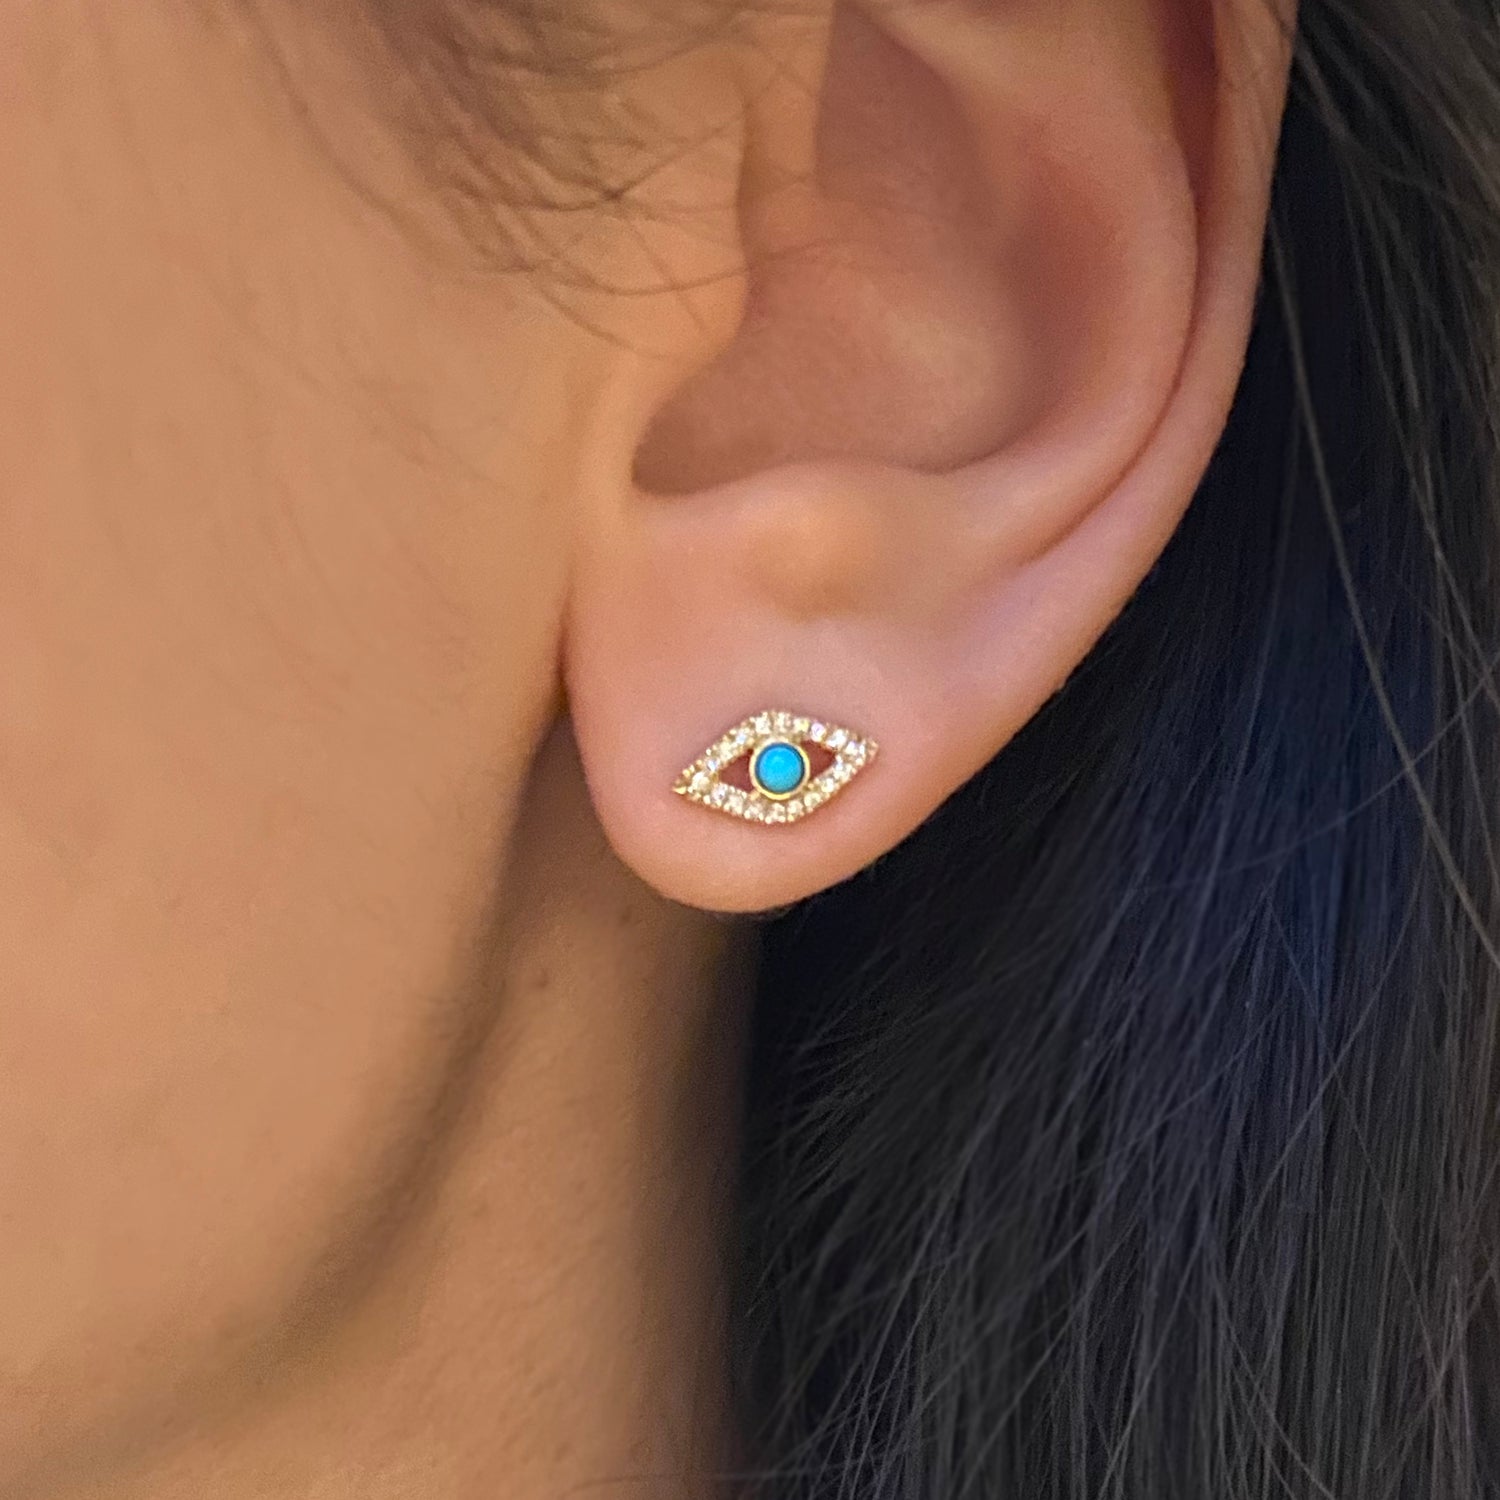 Turquoise Evil Eye Stud Earrings With Diamonds